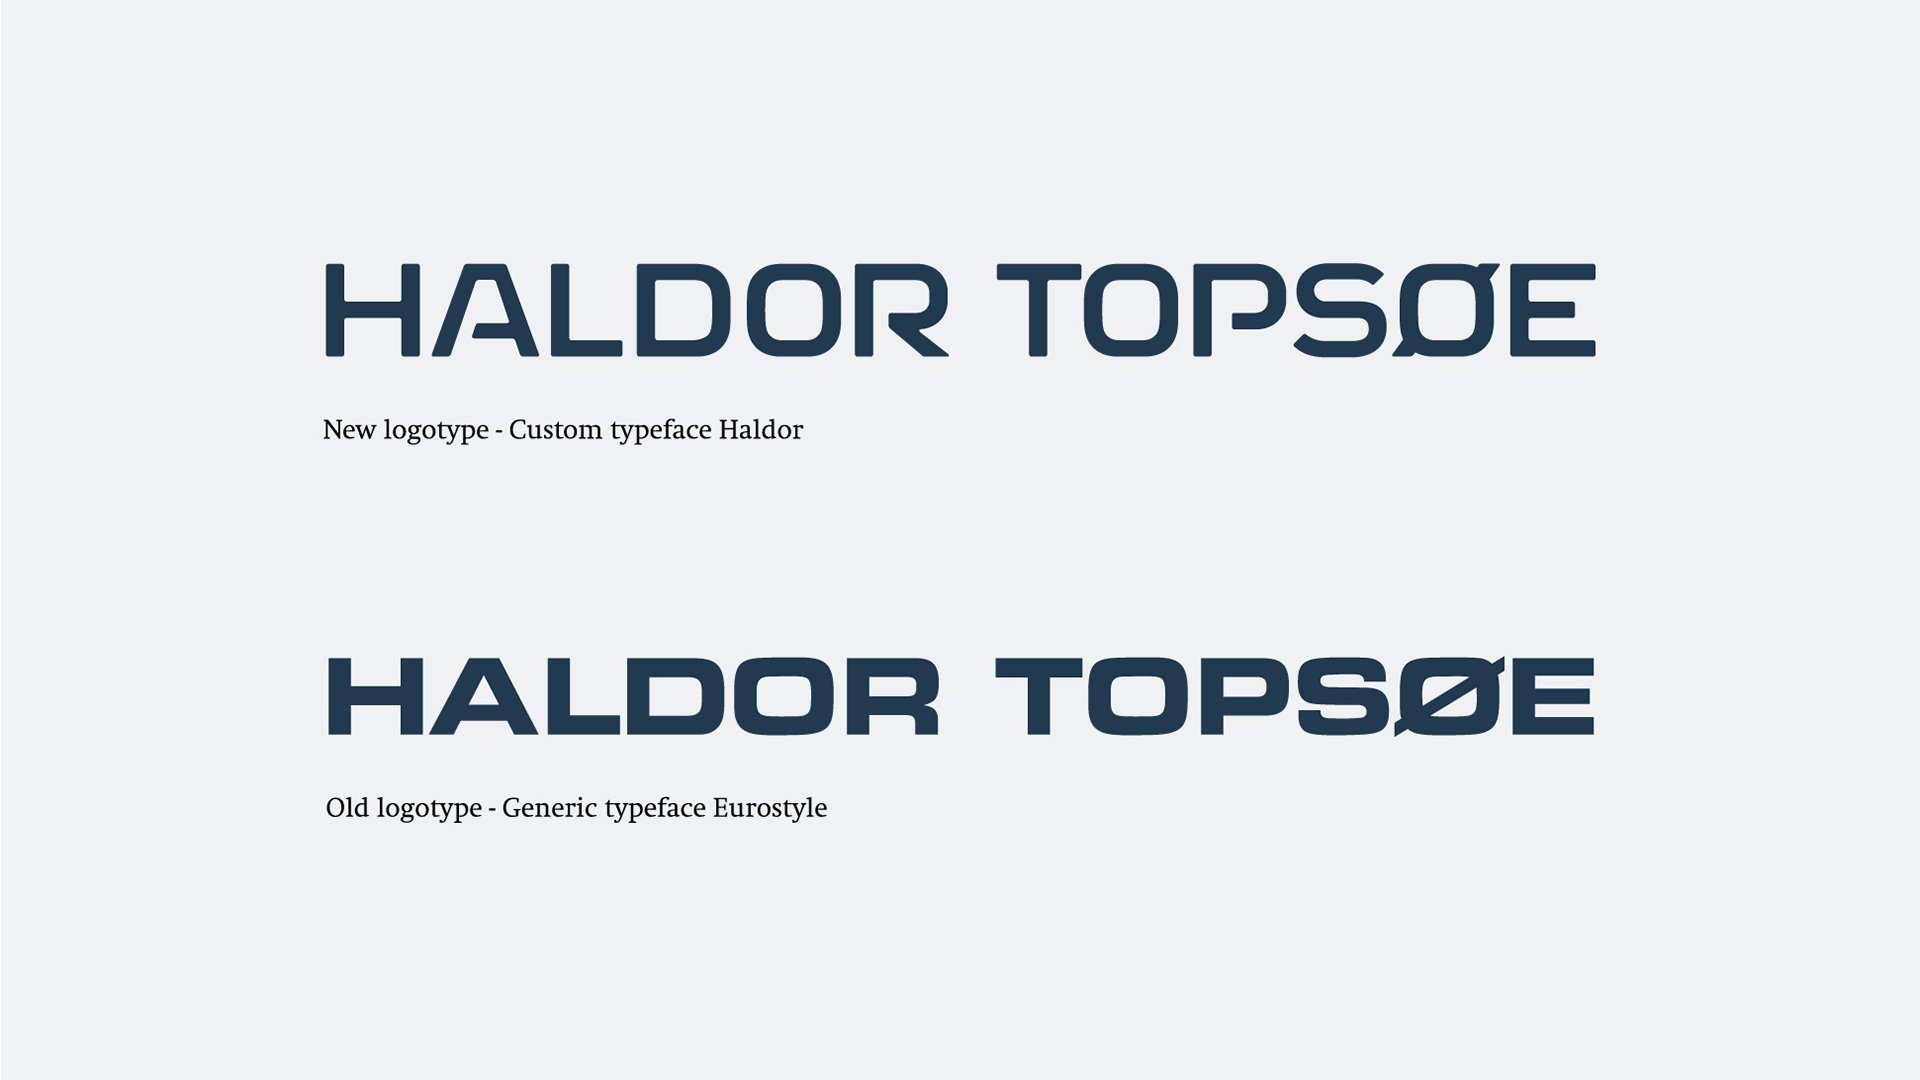 Haldor Topsøe logo update by LOOP Associates